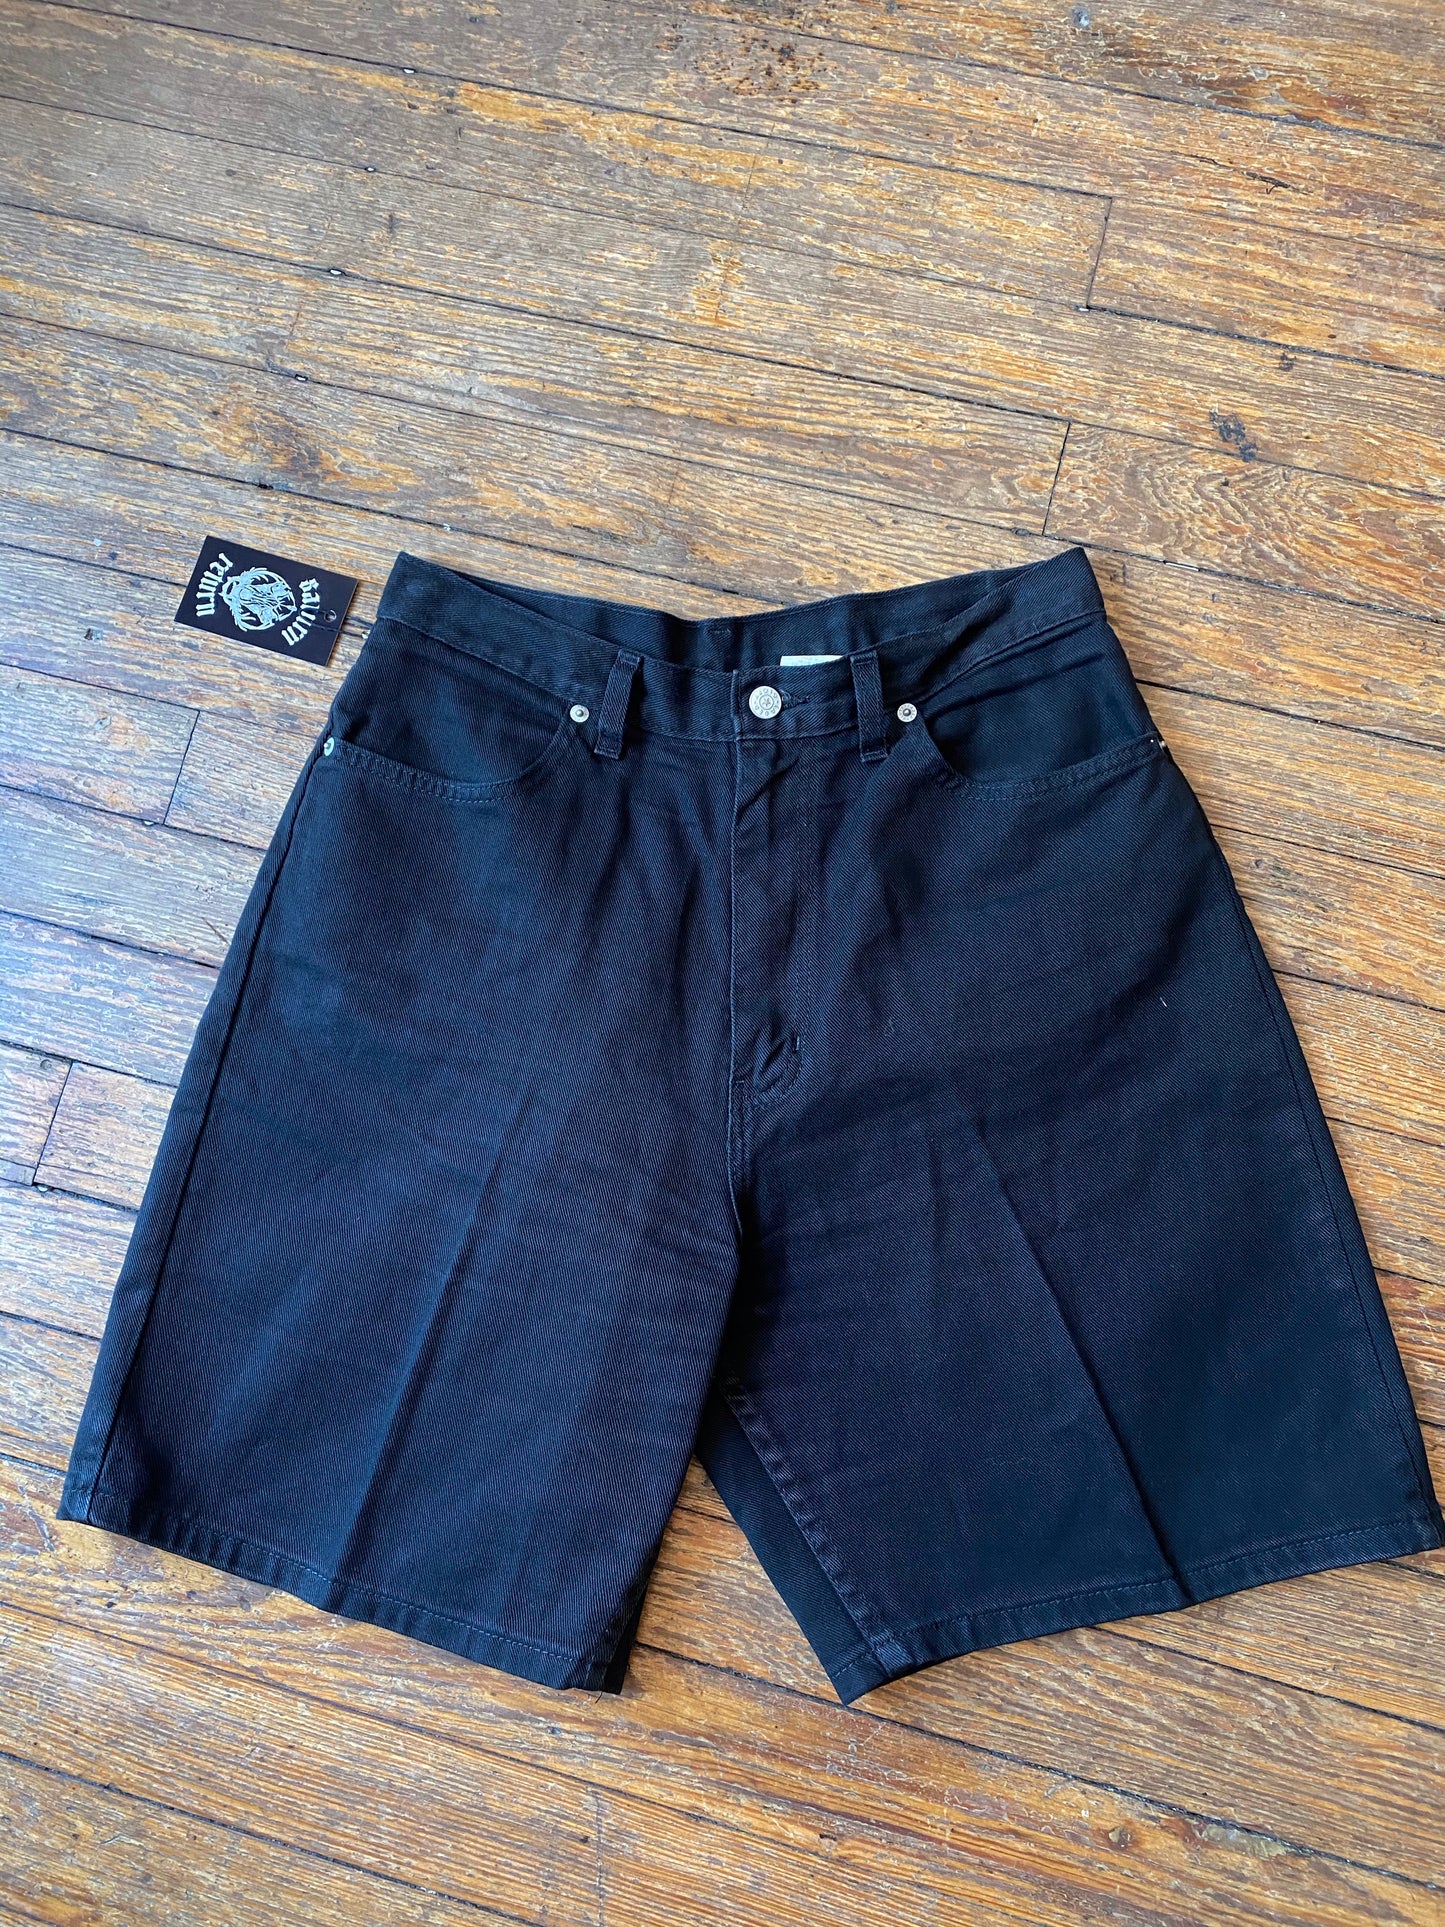 Vintage Black Longline Denim Shorts